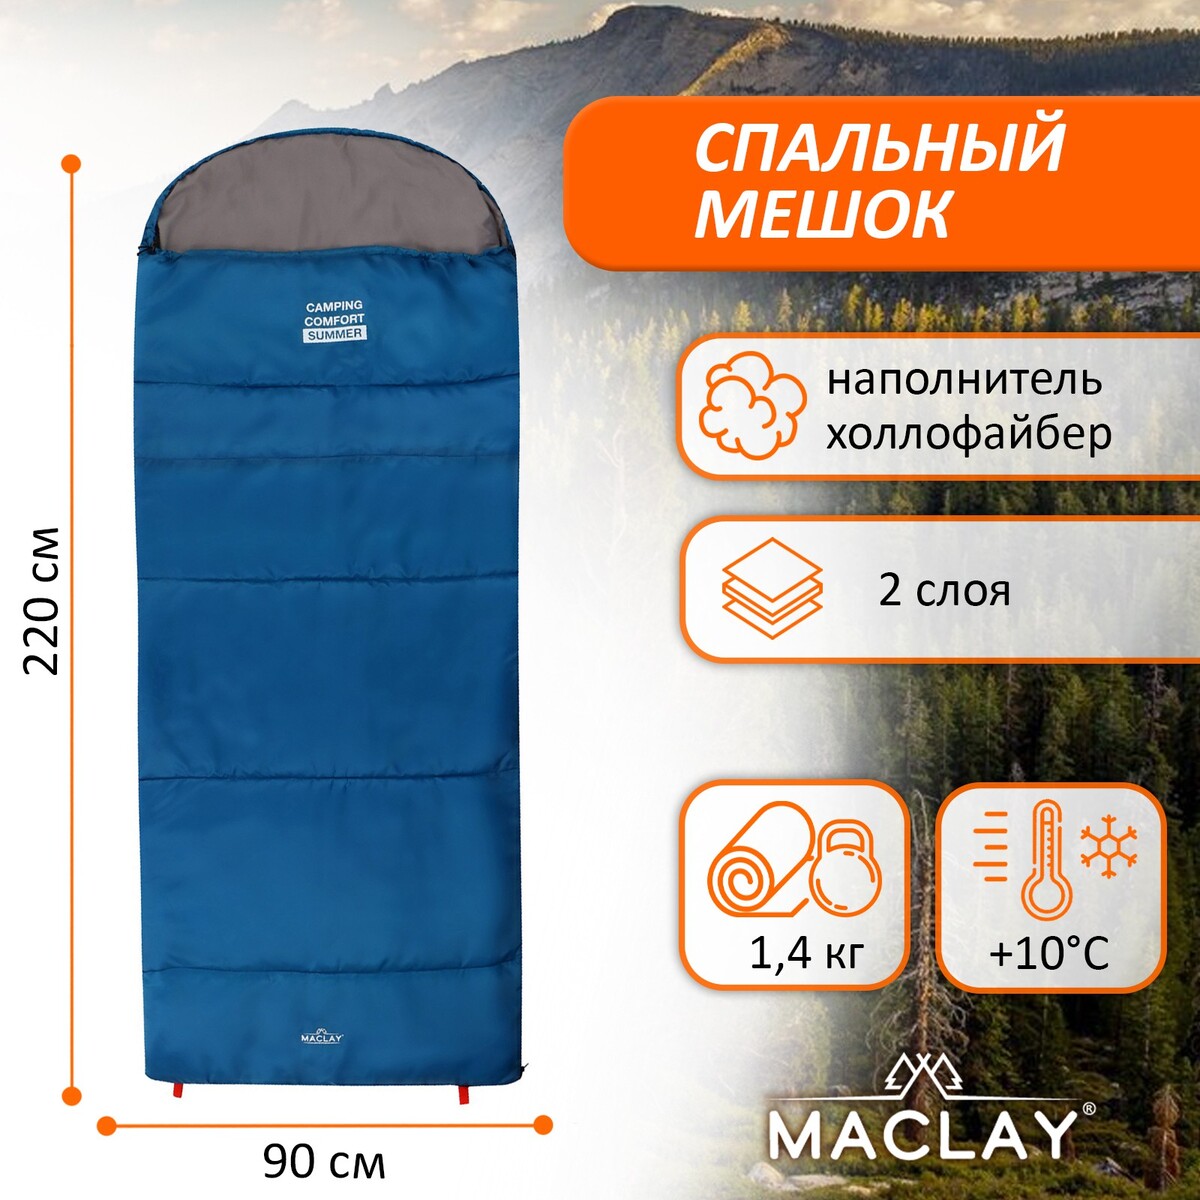 Спальный мешок maclay camping comfort summer, 2 слоя, левый, с подголовником, 220х90 см, +10/+25°с блокнот summer скетчи лизы красновой